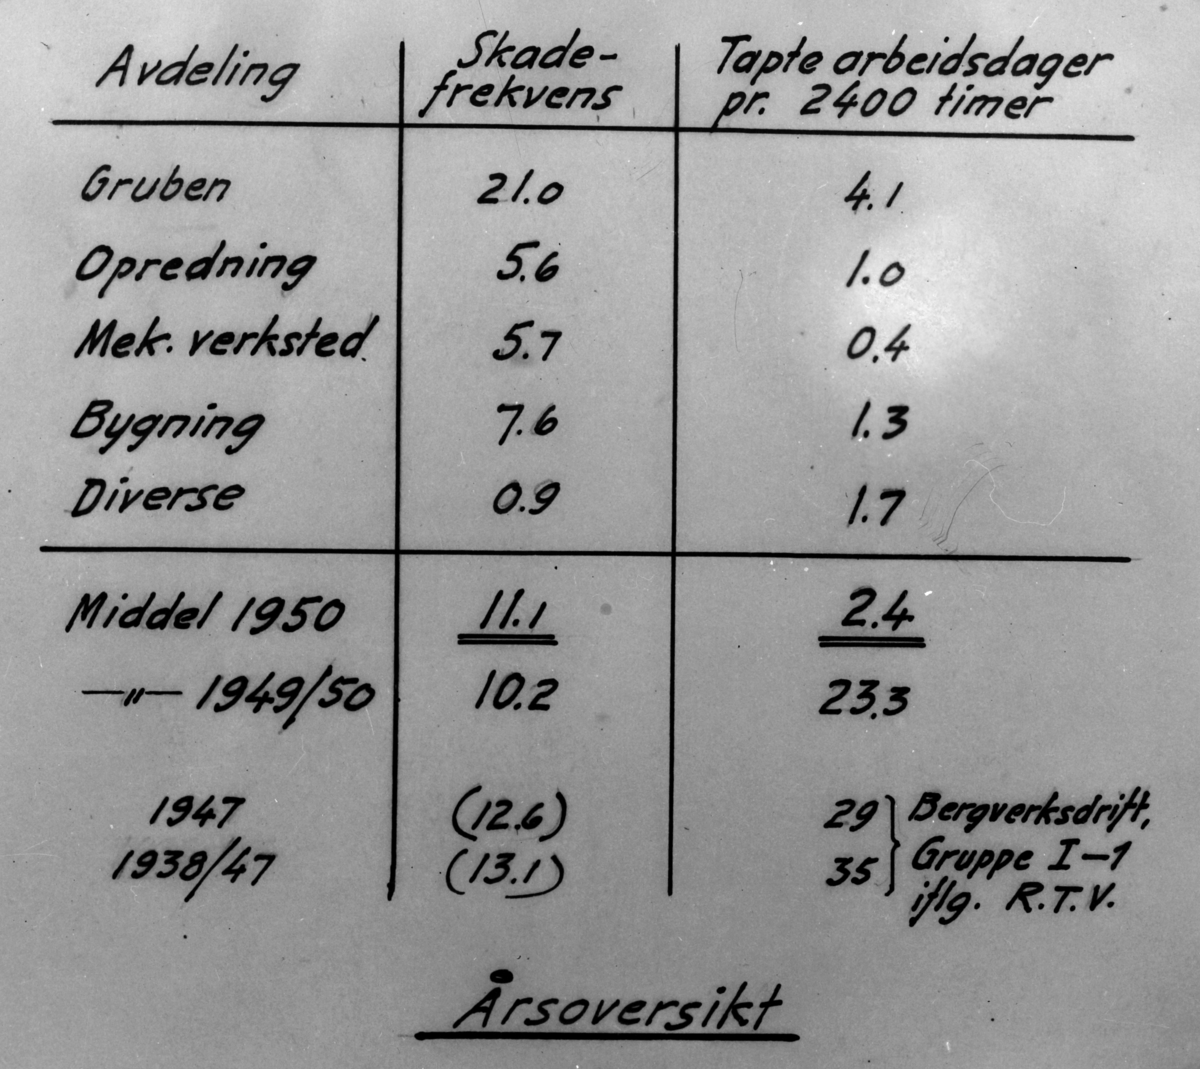 Skadestatistikk 1912-1951. Grubeavdelingen, Orkla Grube-Aktiebolag.